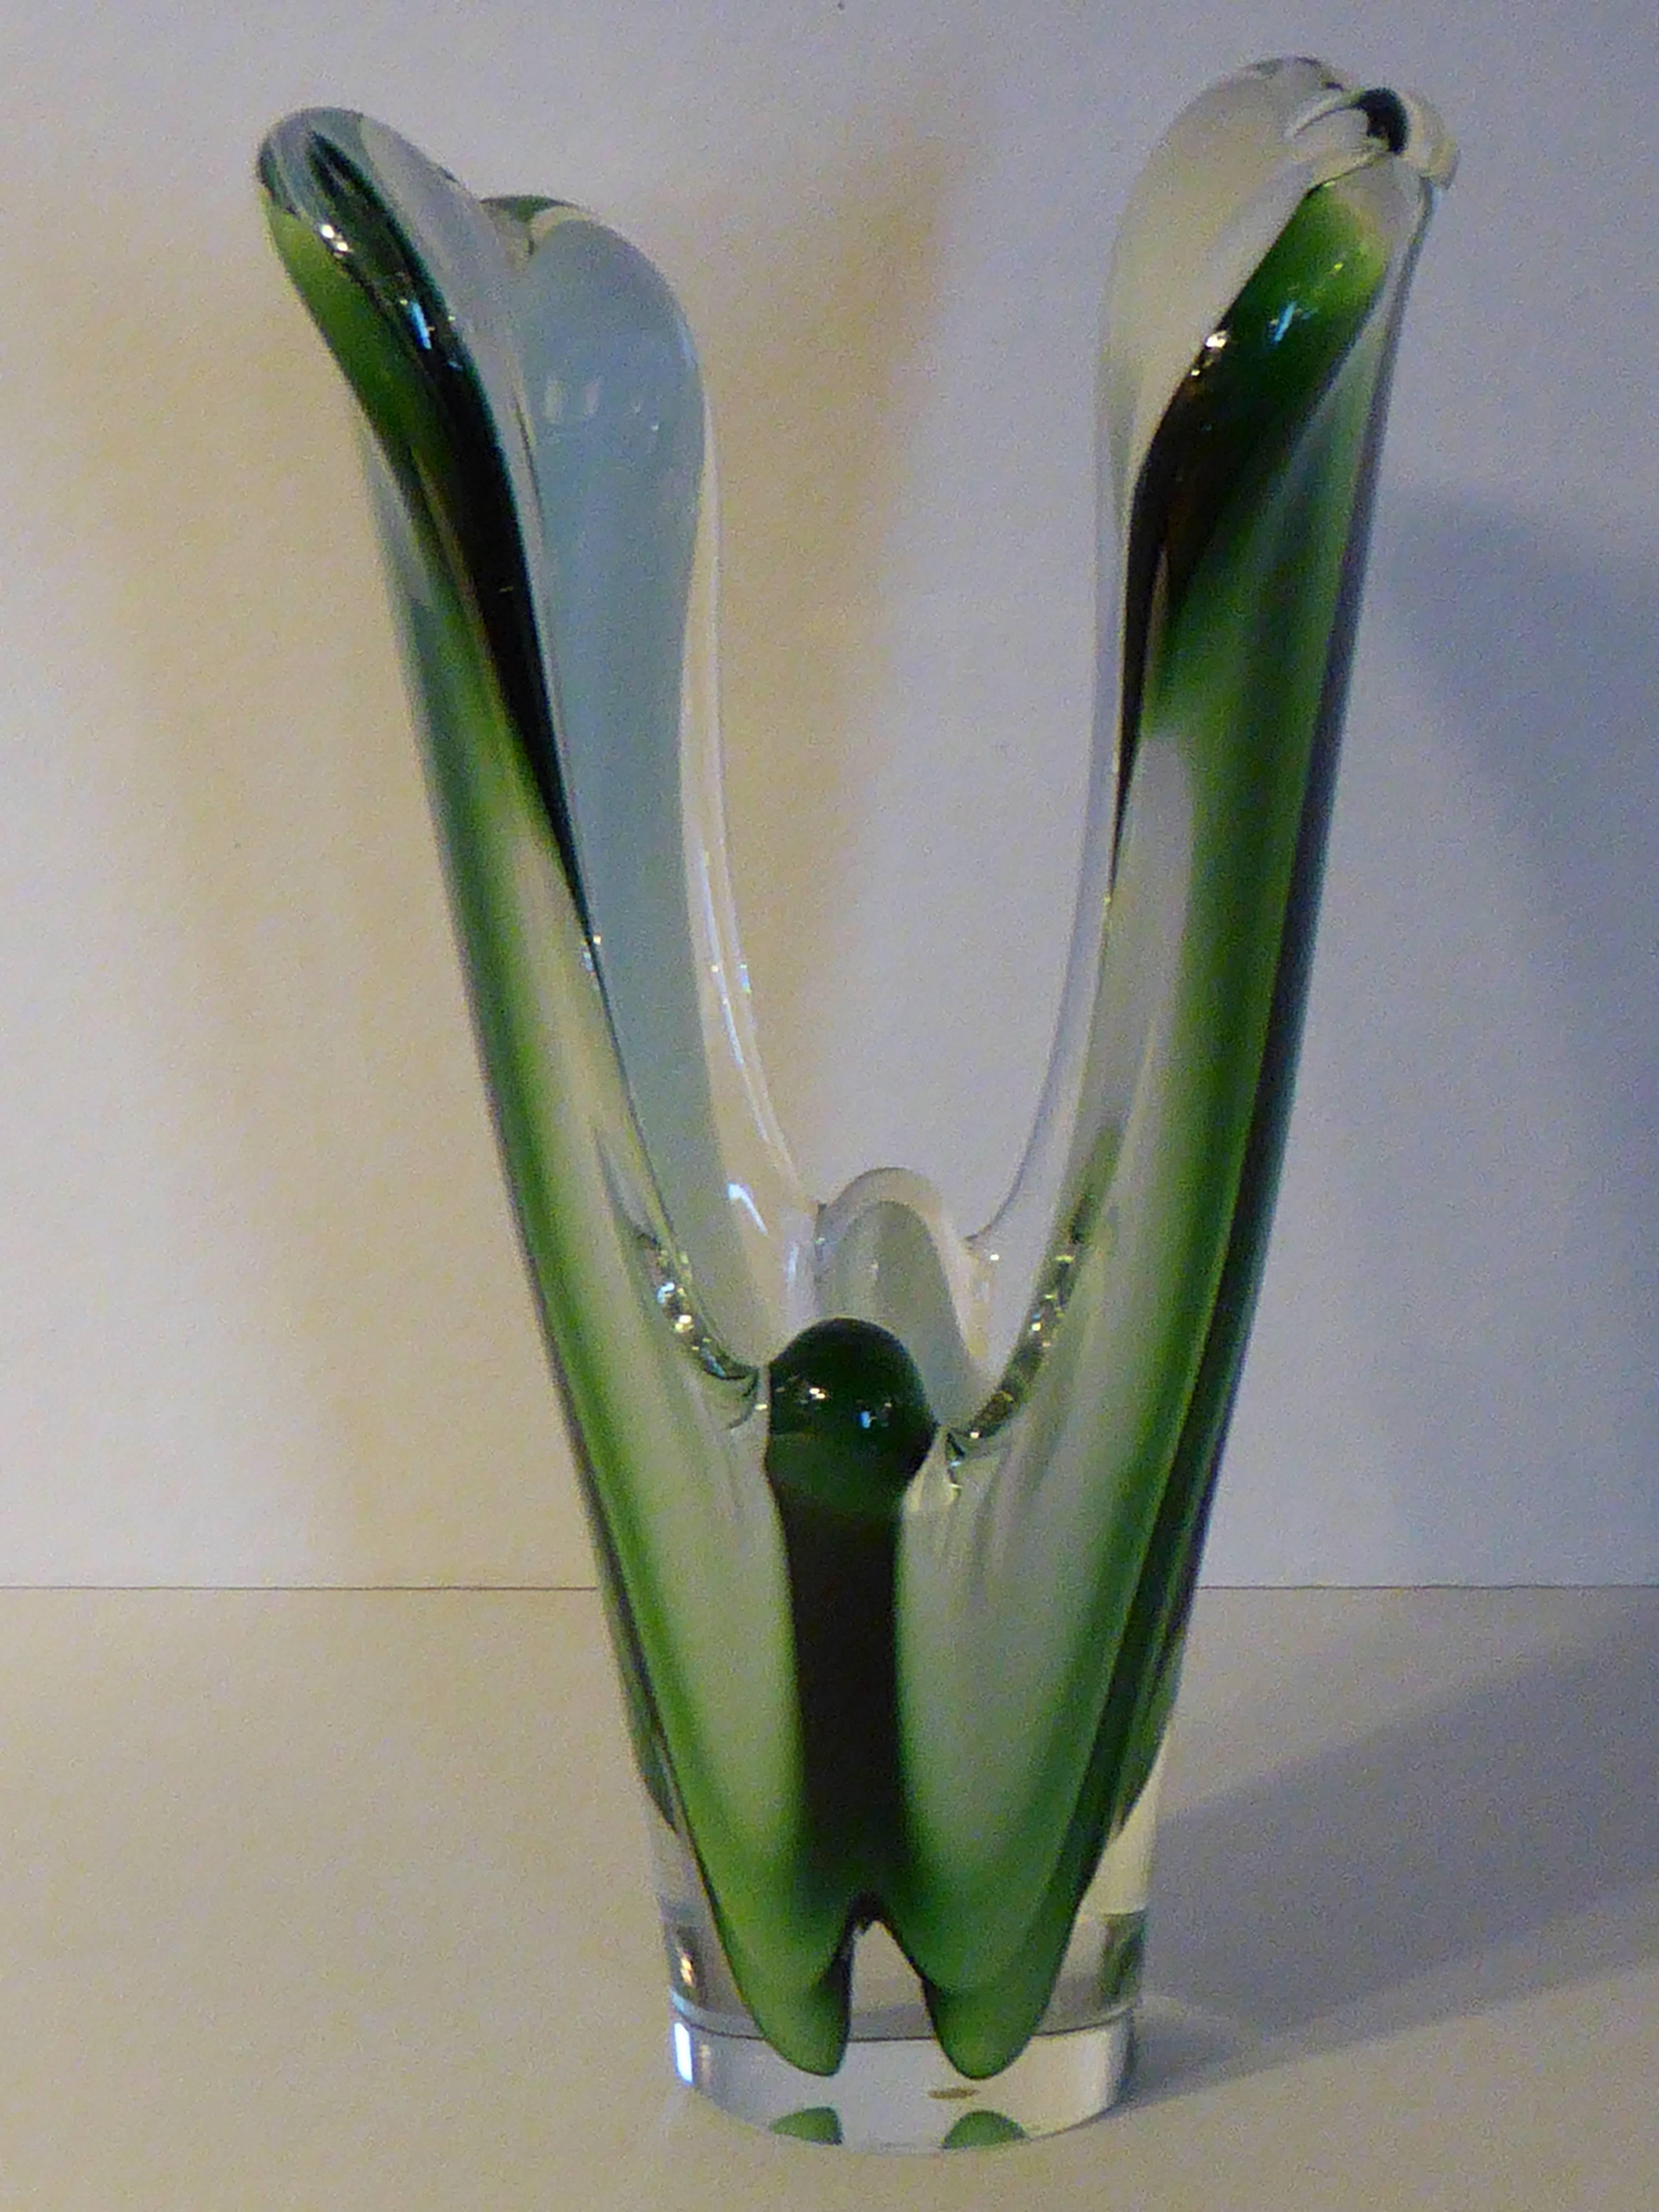 Superbe sculpture ou vase scandinave en verre de forme libre. Verre vert et blanc encastré dans du verre transparent. Fabriqué par la firme suédoise Flygsfors en 1960 et conçu par Paul Kedelv, il fait partie de sa ligne très organique Coquille.